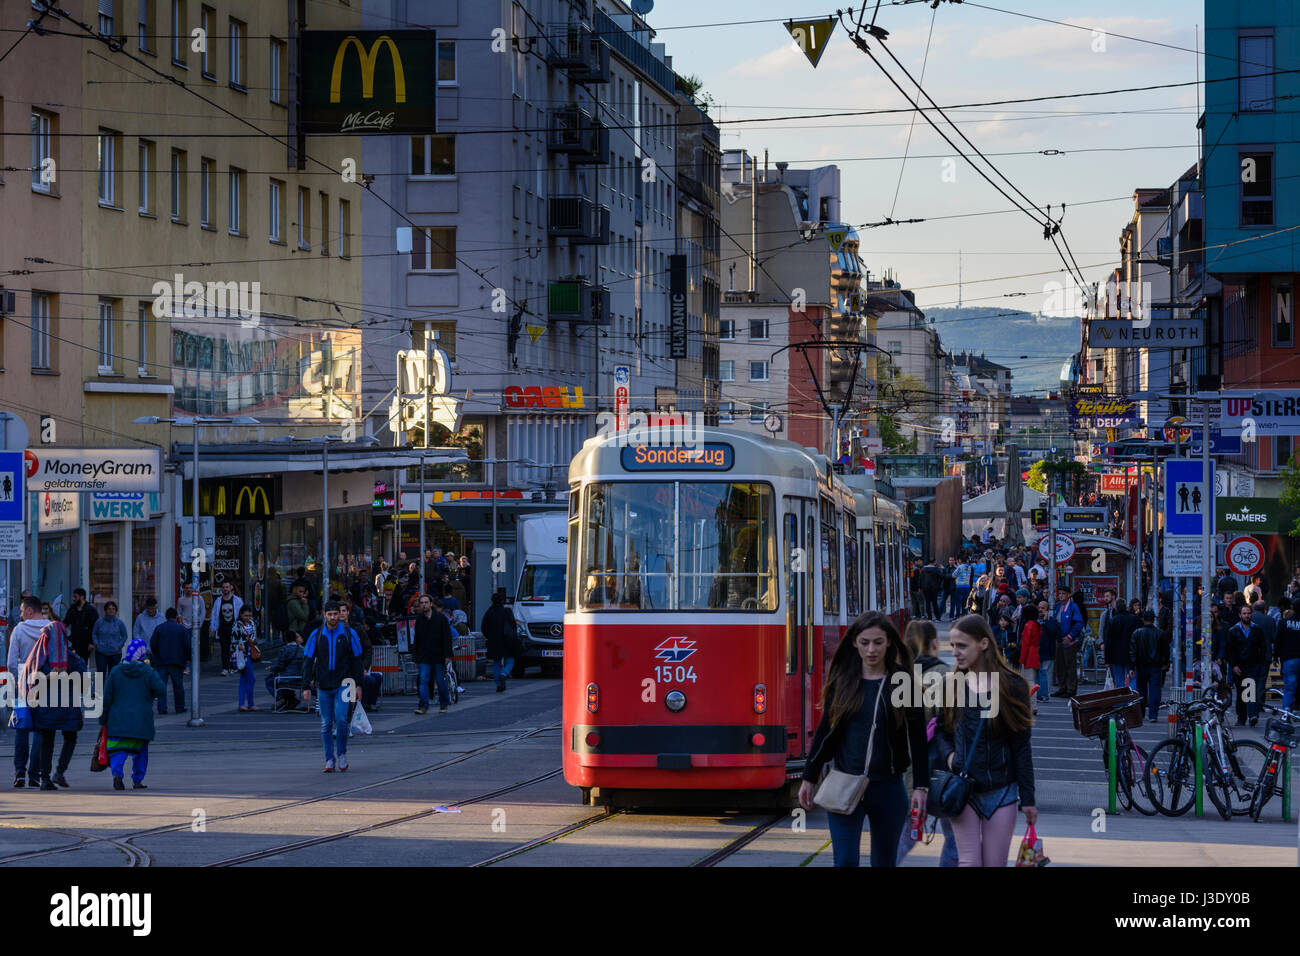 street Favoritenstraße, streetcar, people, view to Kahlenberg, Wien, Vienna, 10. Favoriten, Wien, Austria Stock Photo